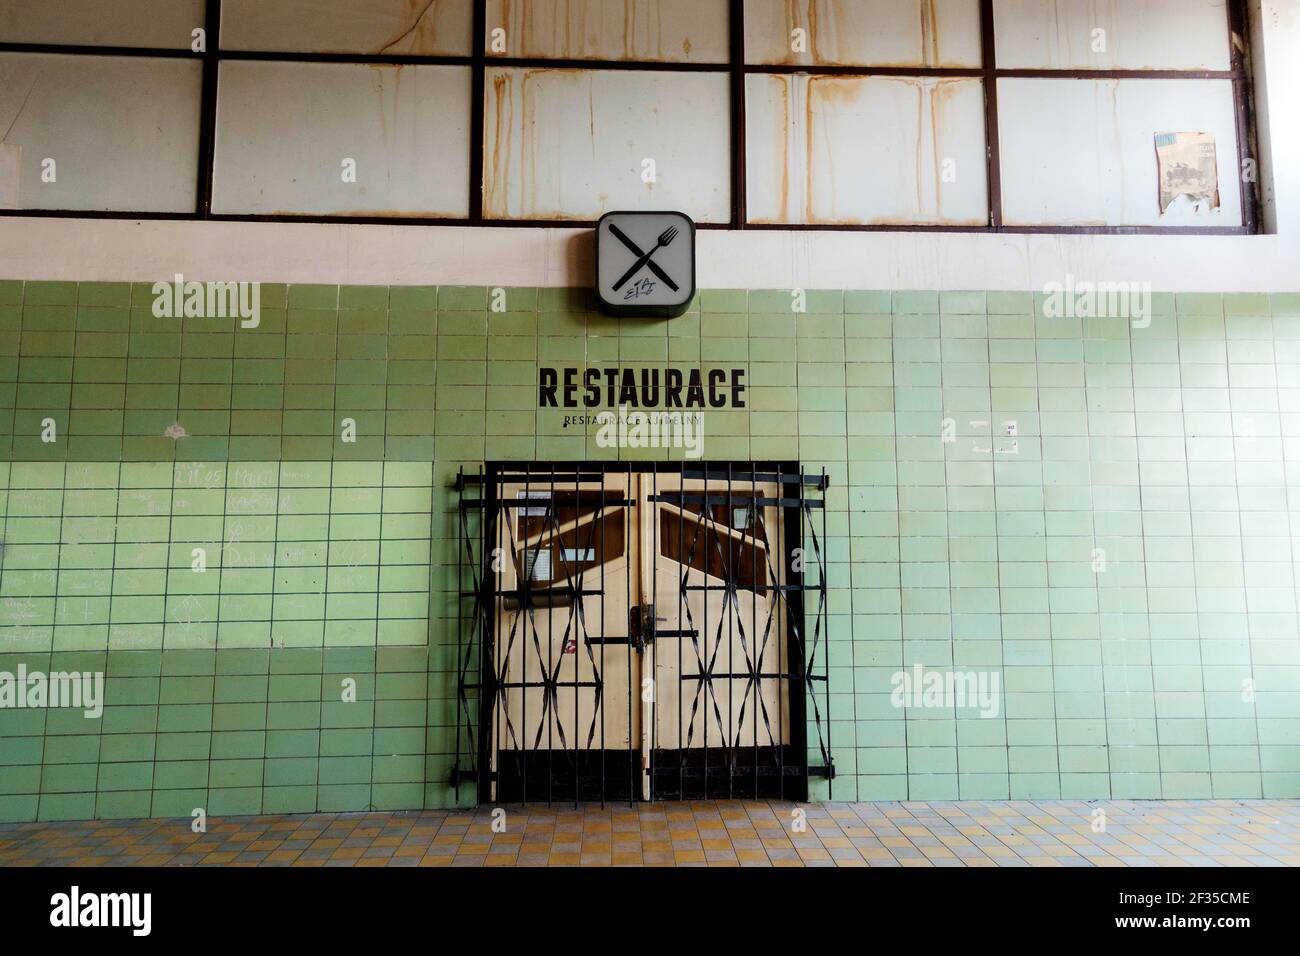 Restaurant fermé de la gare, signe, design typique des années 80 République tchèque nature morte avec le souvenir de l'ère communiste, grilles carrelage la saleté Banque D'Images